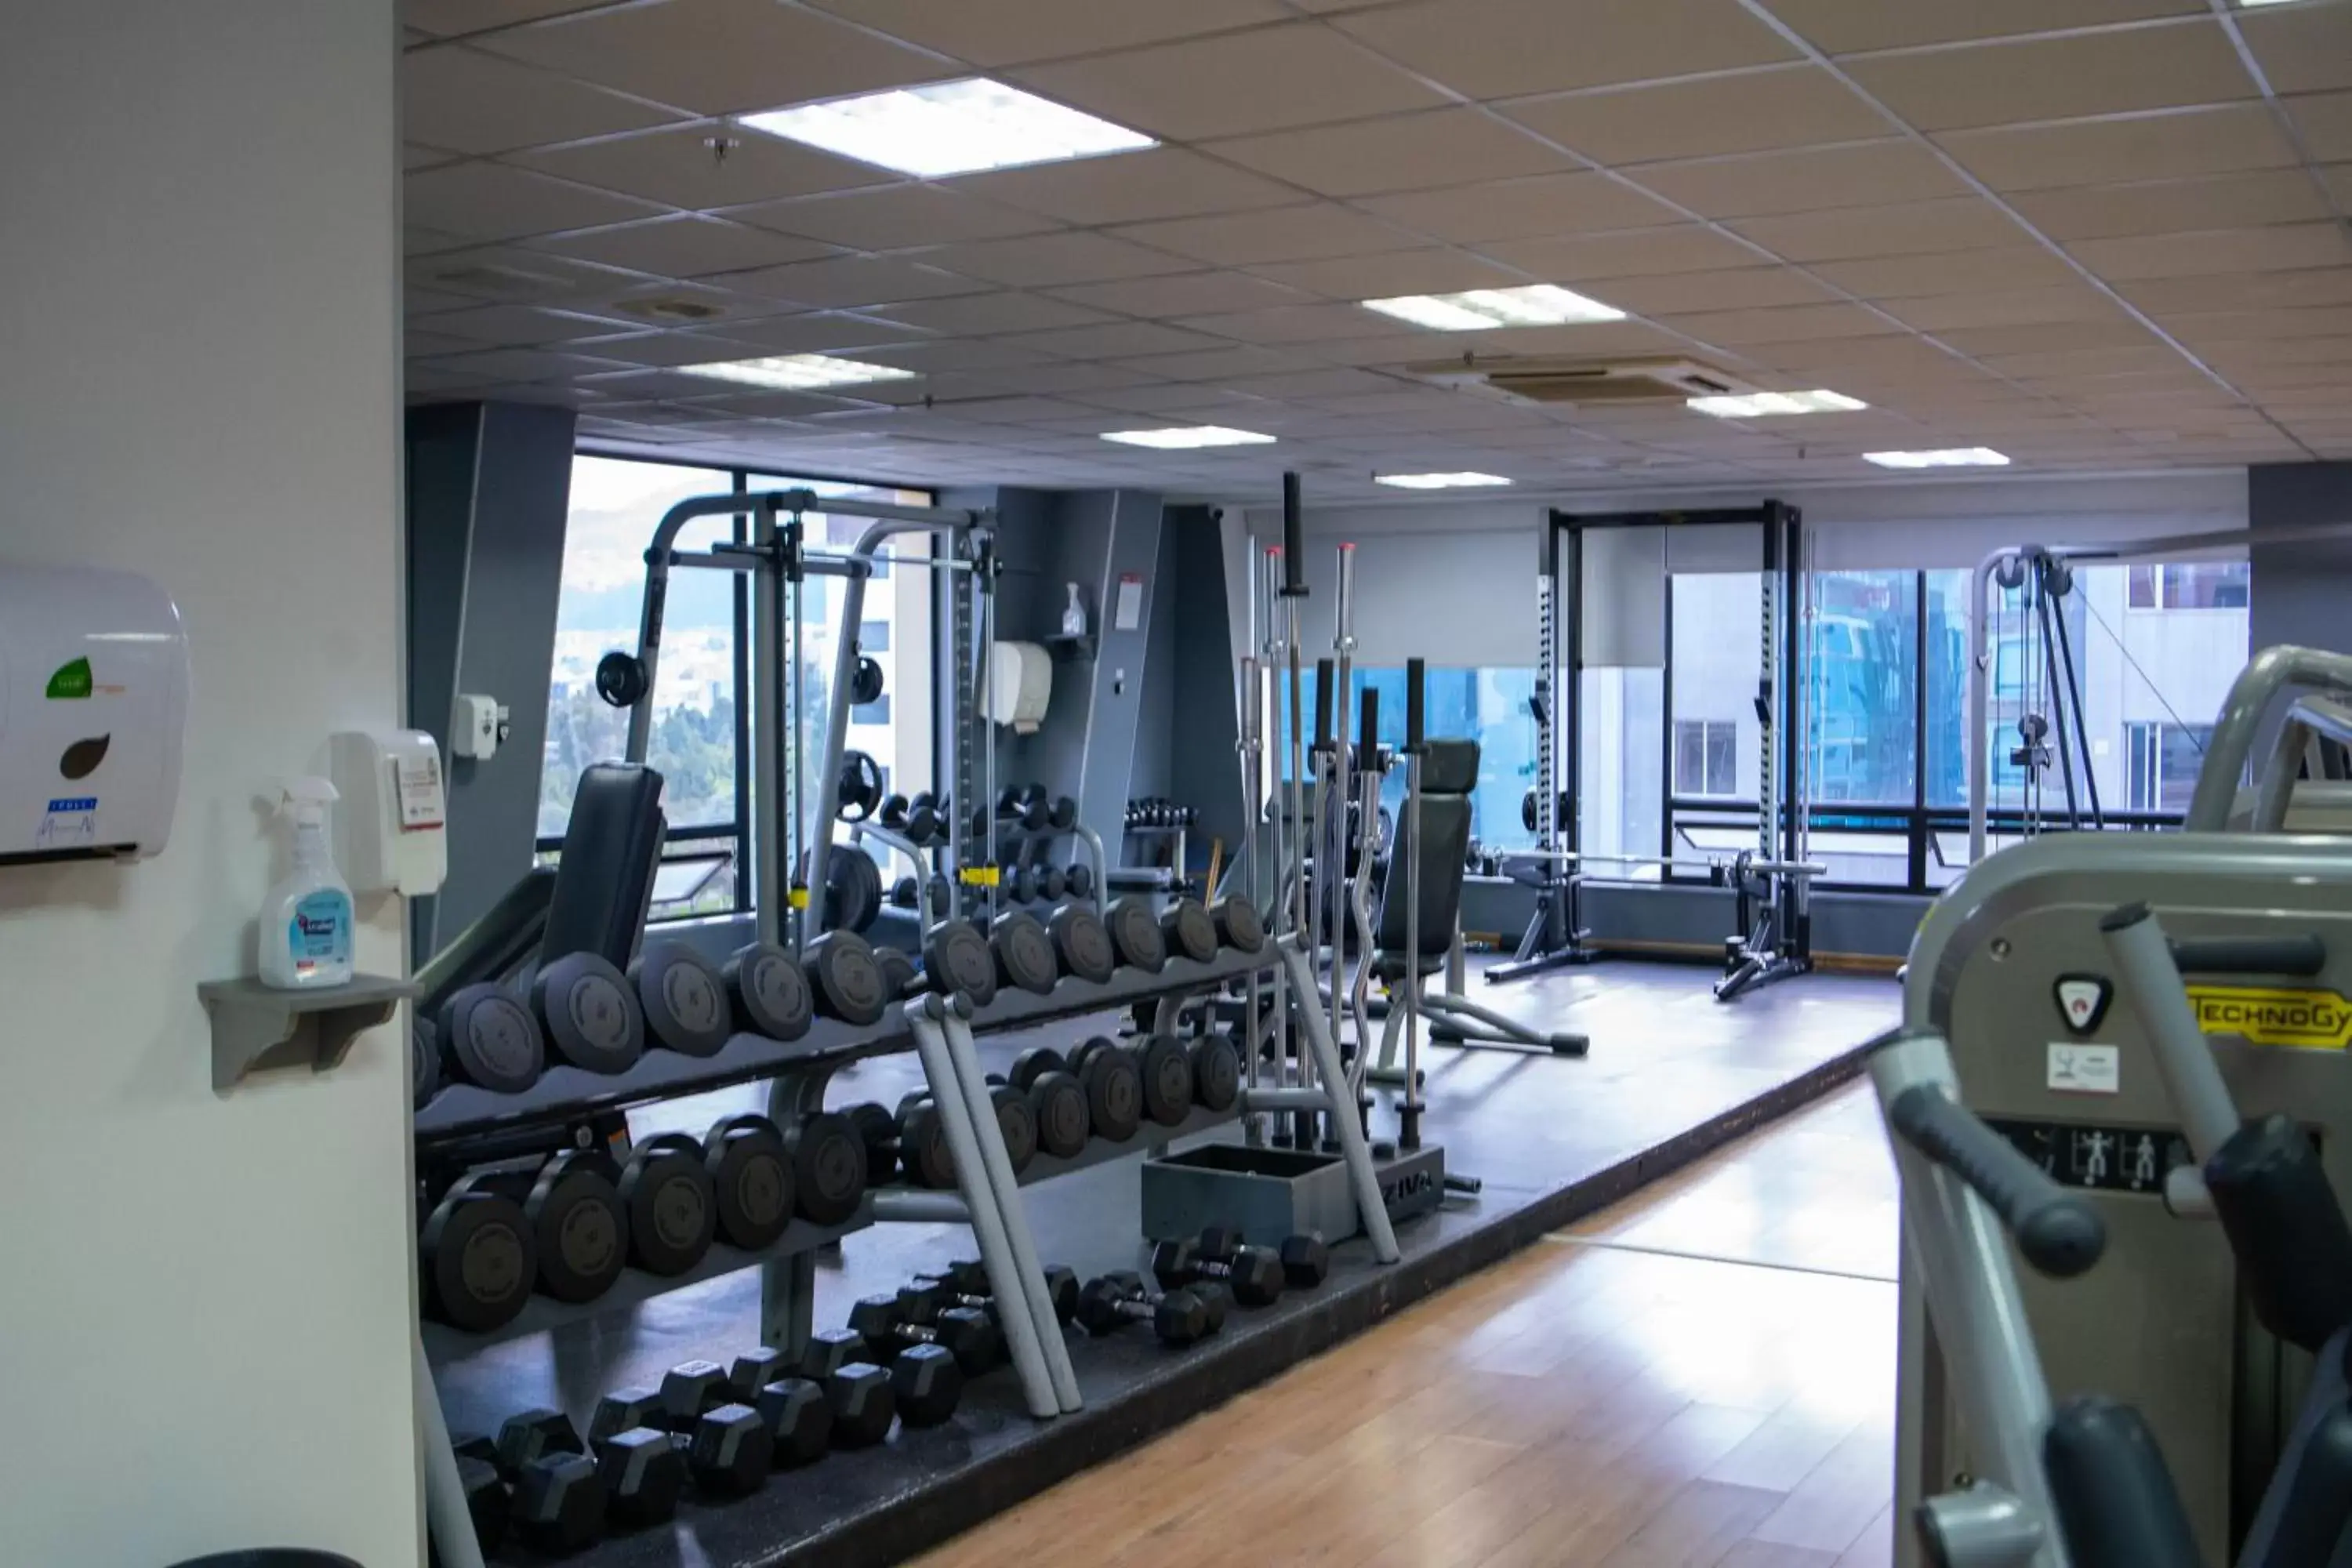 Fitness centre/facilities, Fitness Center/Facilities in Dann Carlton Quito